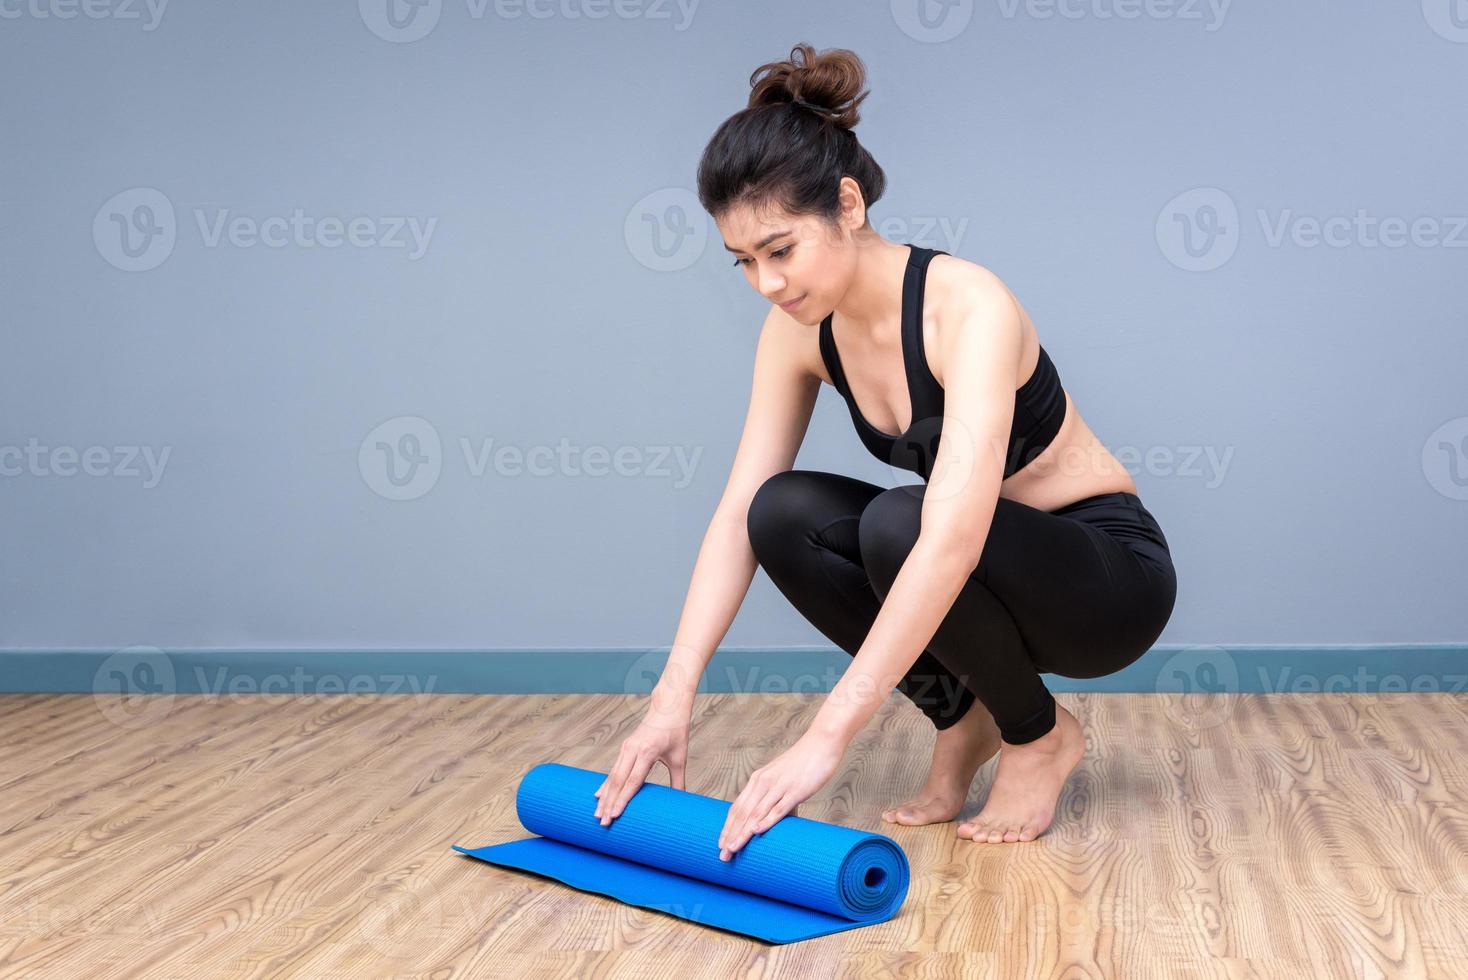 gezonde vrouw die yoga uitoefent bij sportgymnastiek, meisje dat sport indoor doet.photo ontwerp voor fitness sportieve vrouw en gezondheidszorgconcept. foto